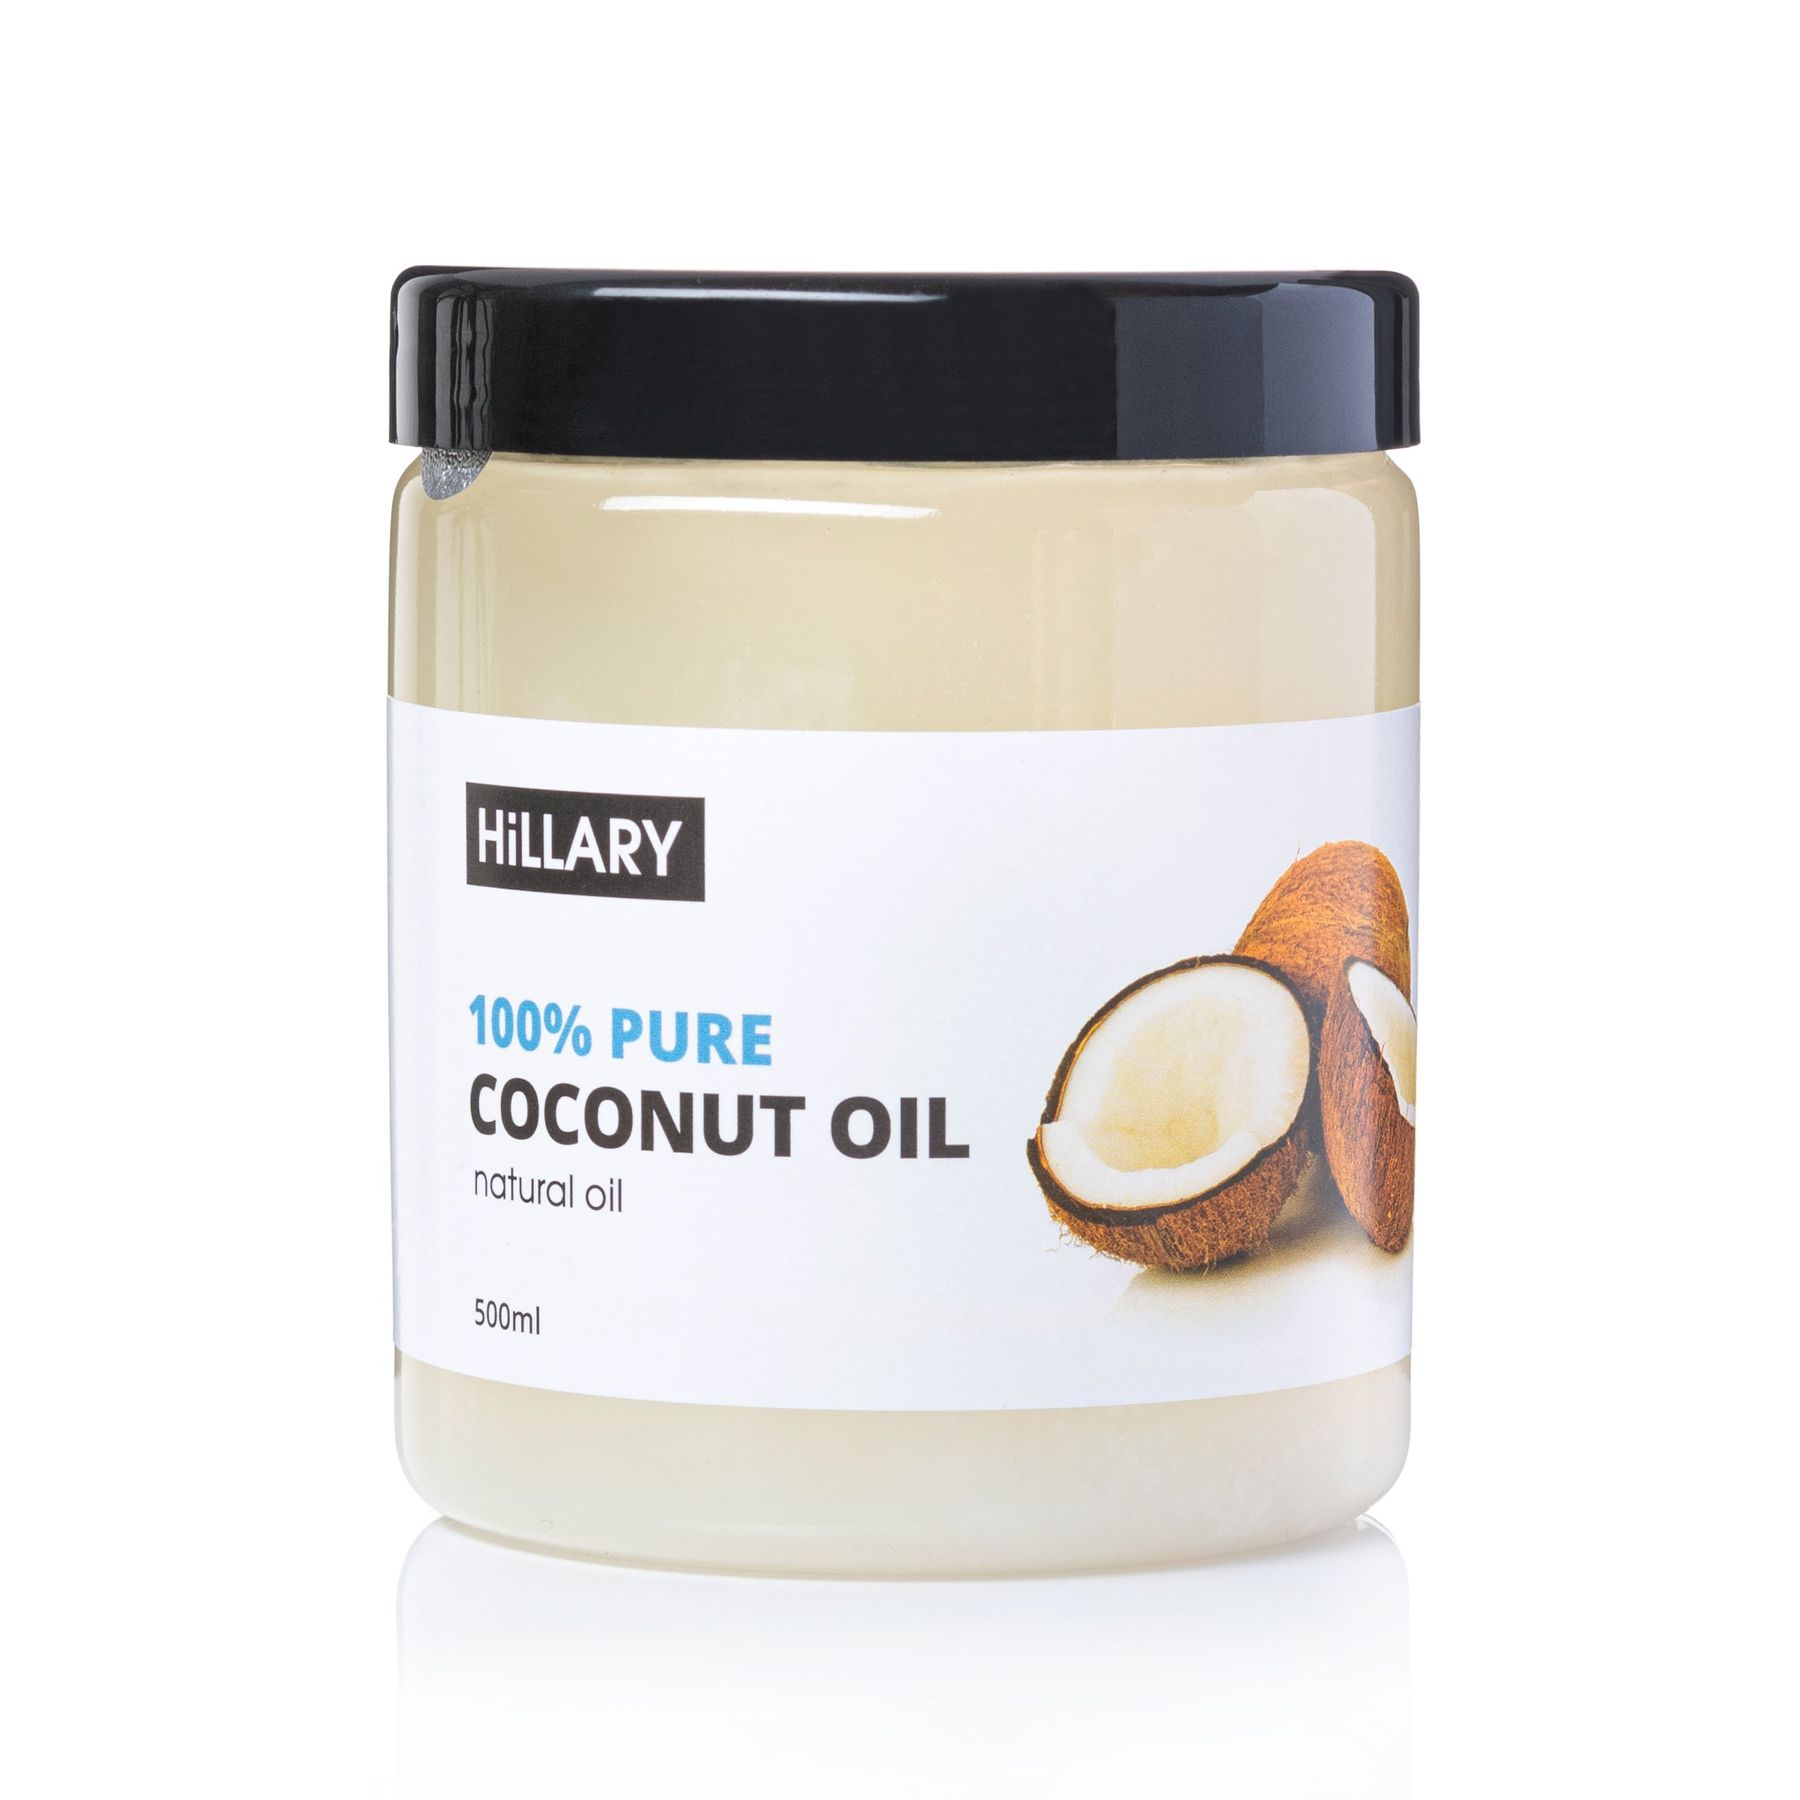 Рафинированное кокосовое масло Hillary 100% Pure Coconut Oil, 500 мл